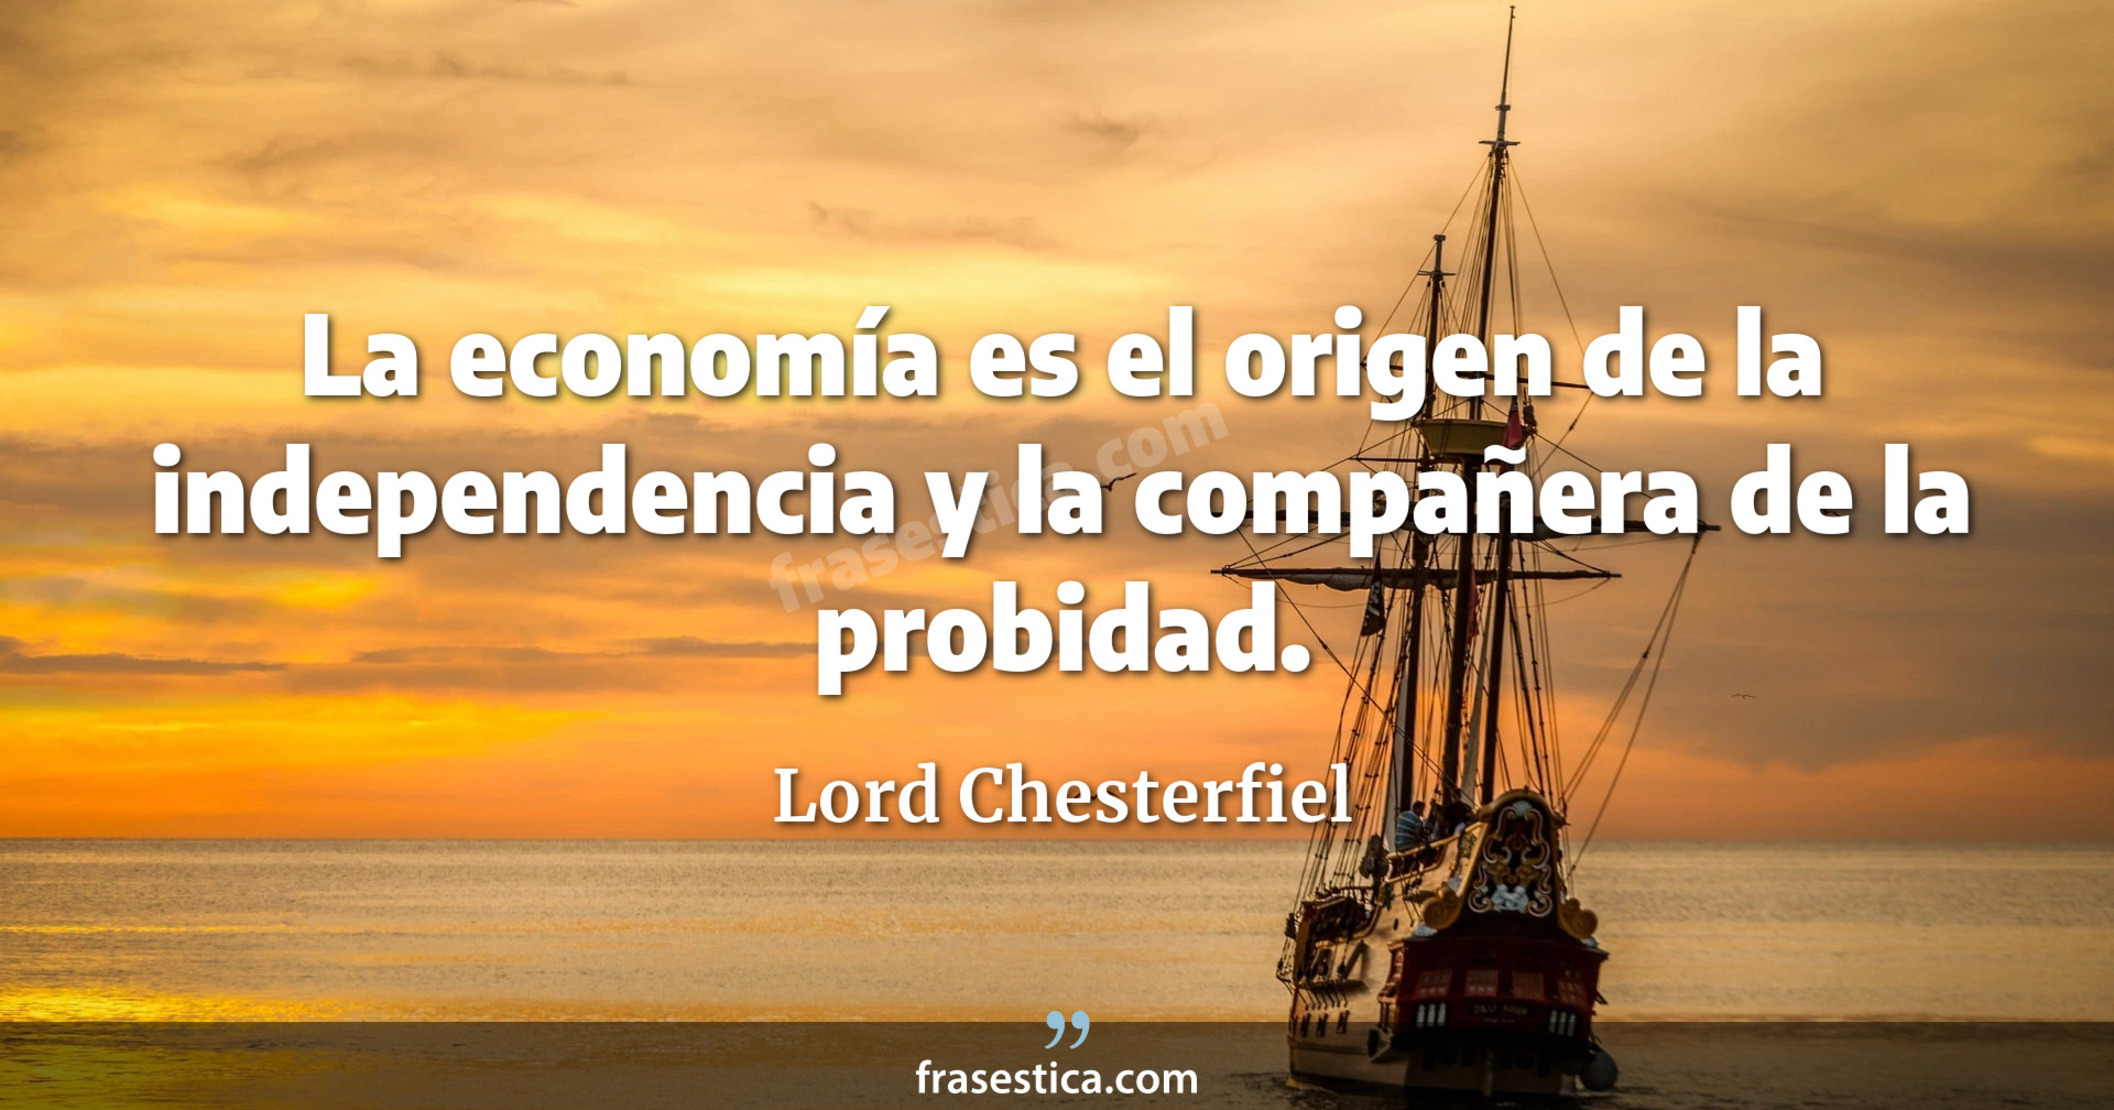 La economía es el origen de la independencia y la compañera de la probidad. - Lord Chesterfiel